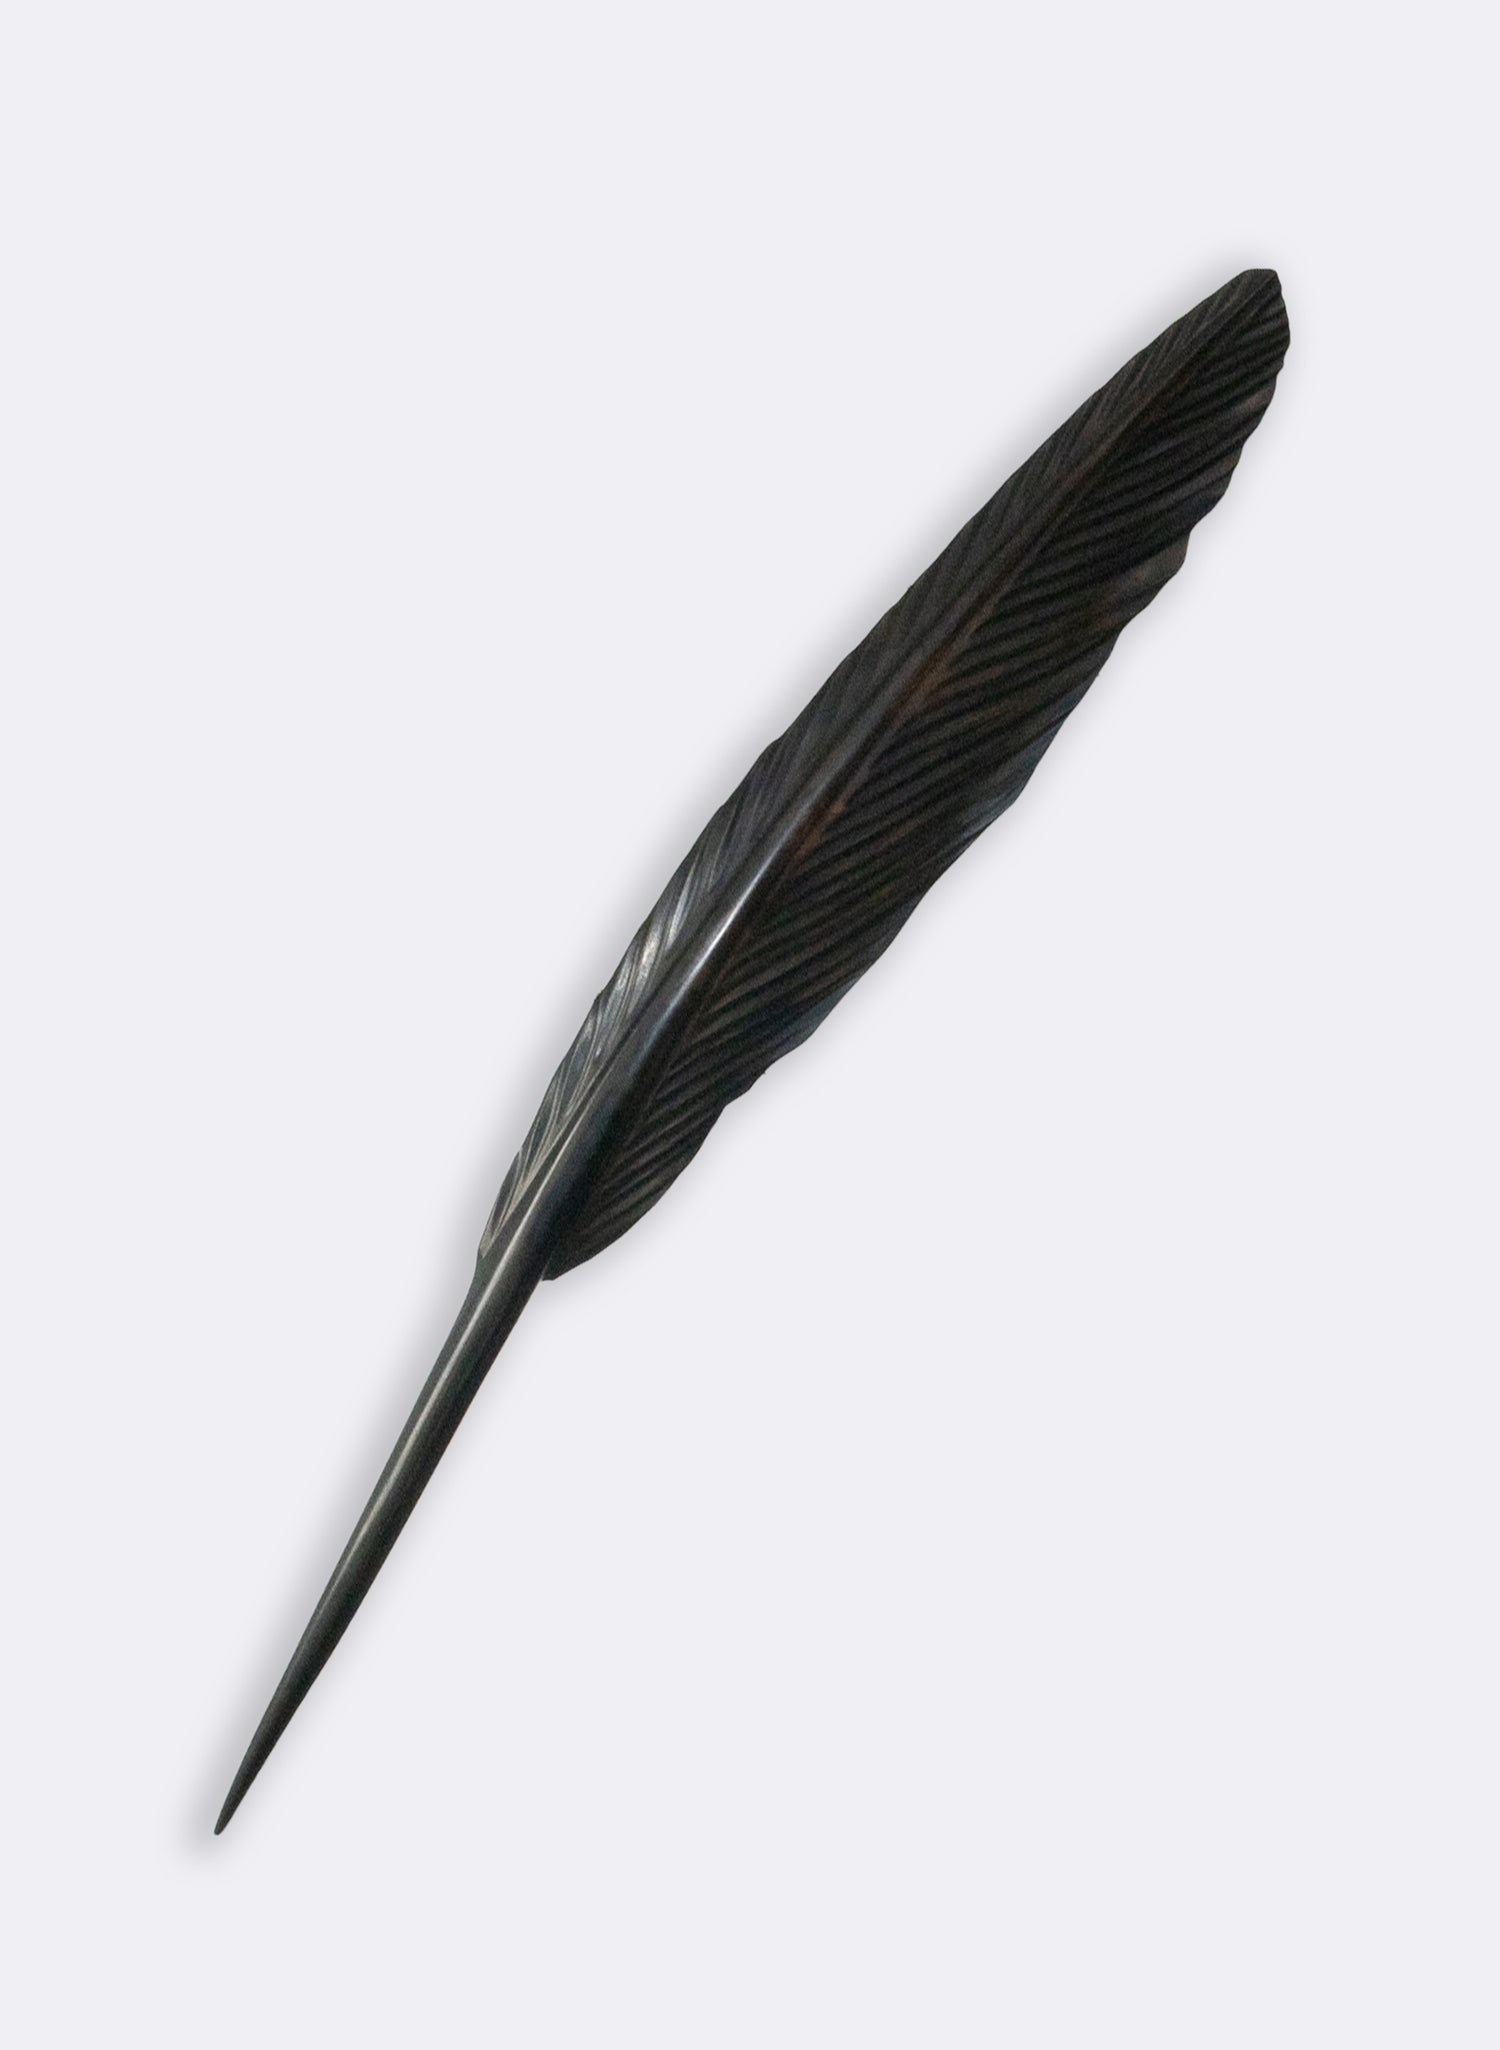 Tui Feather 1225mm - Black Swamp Kauri